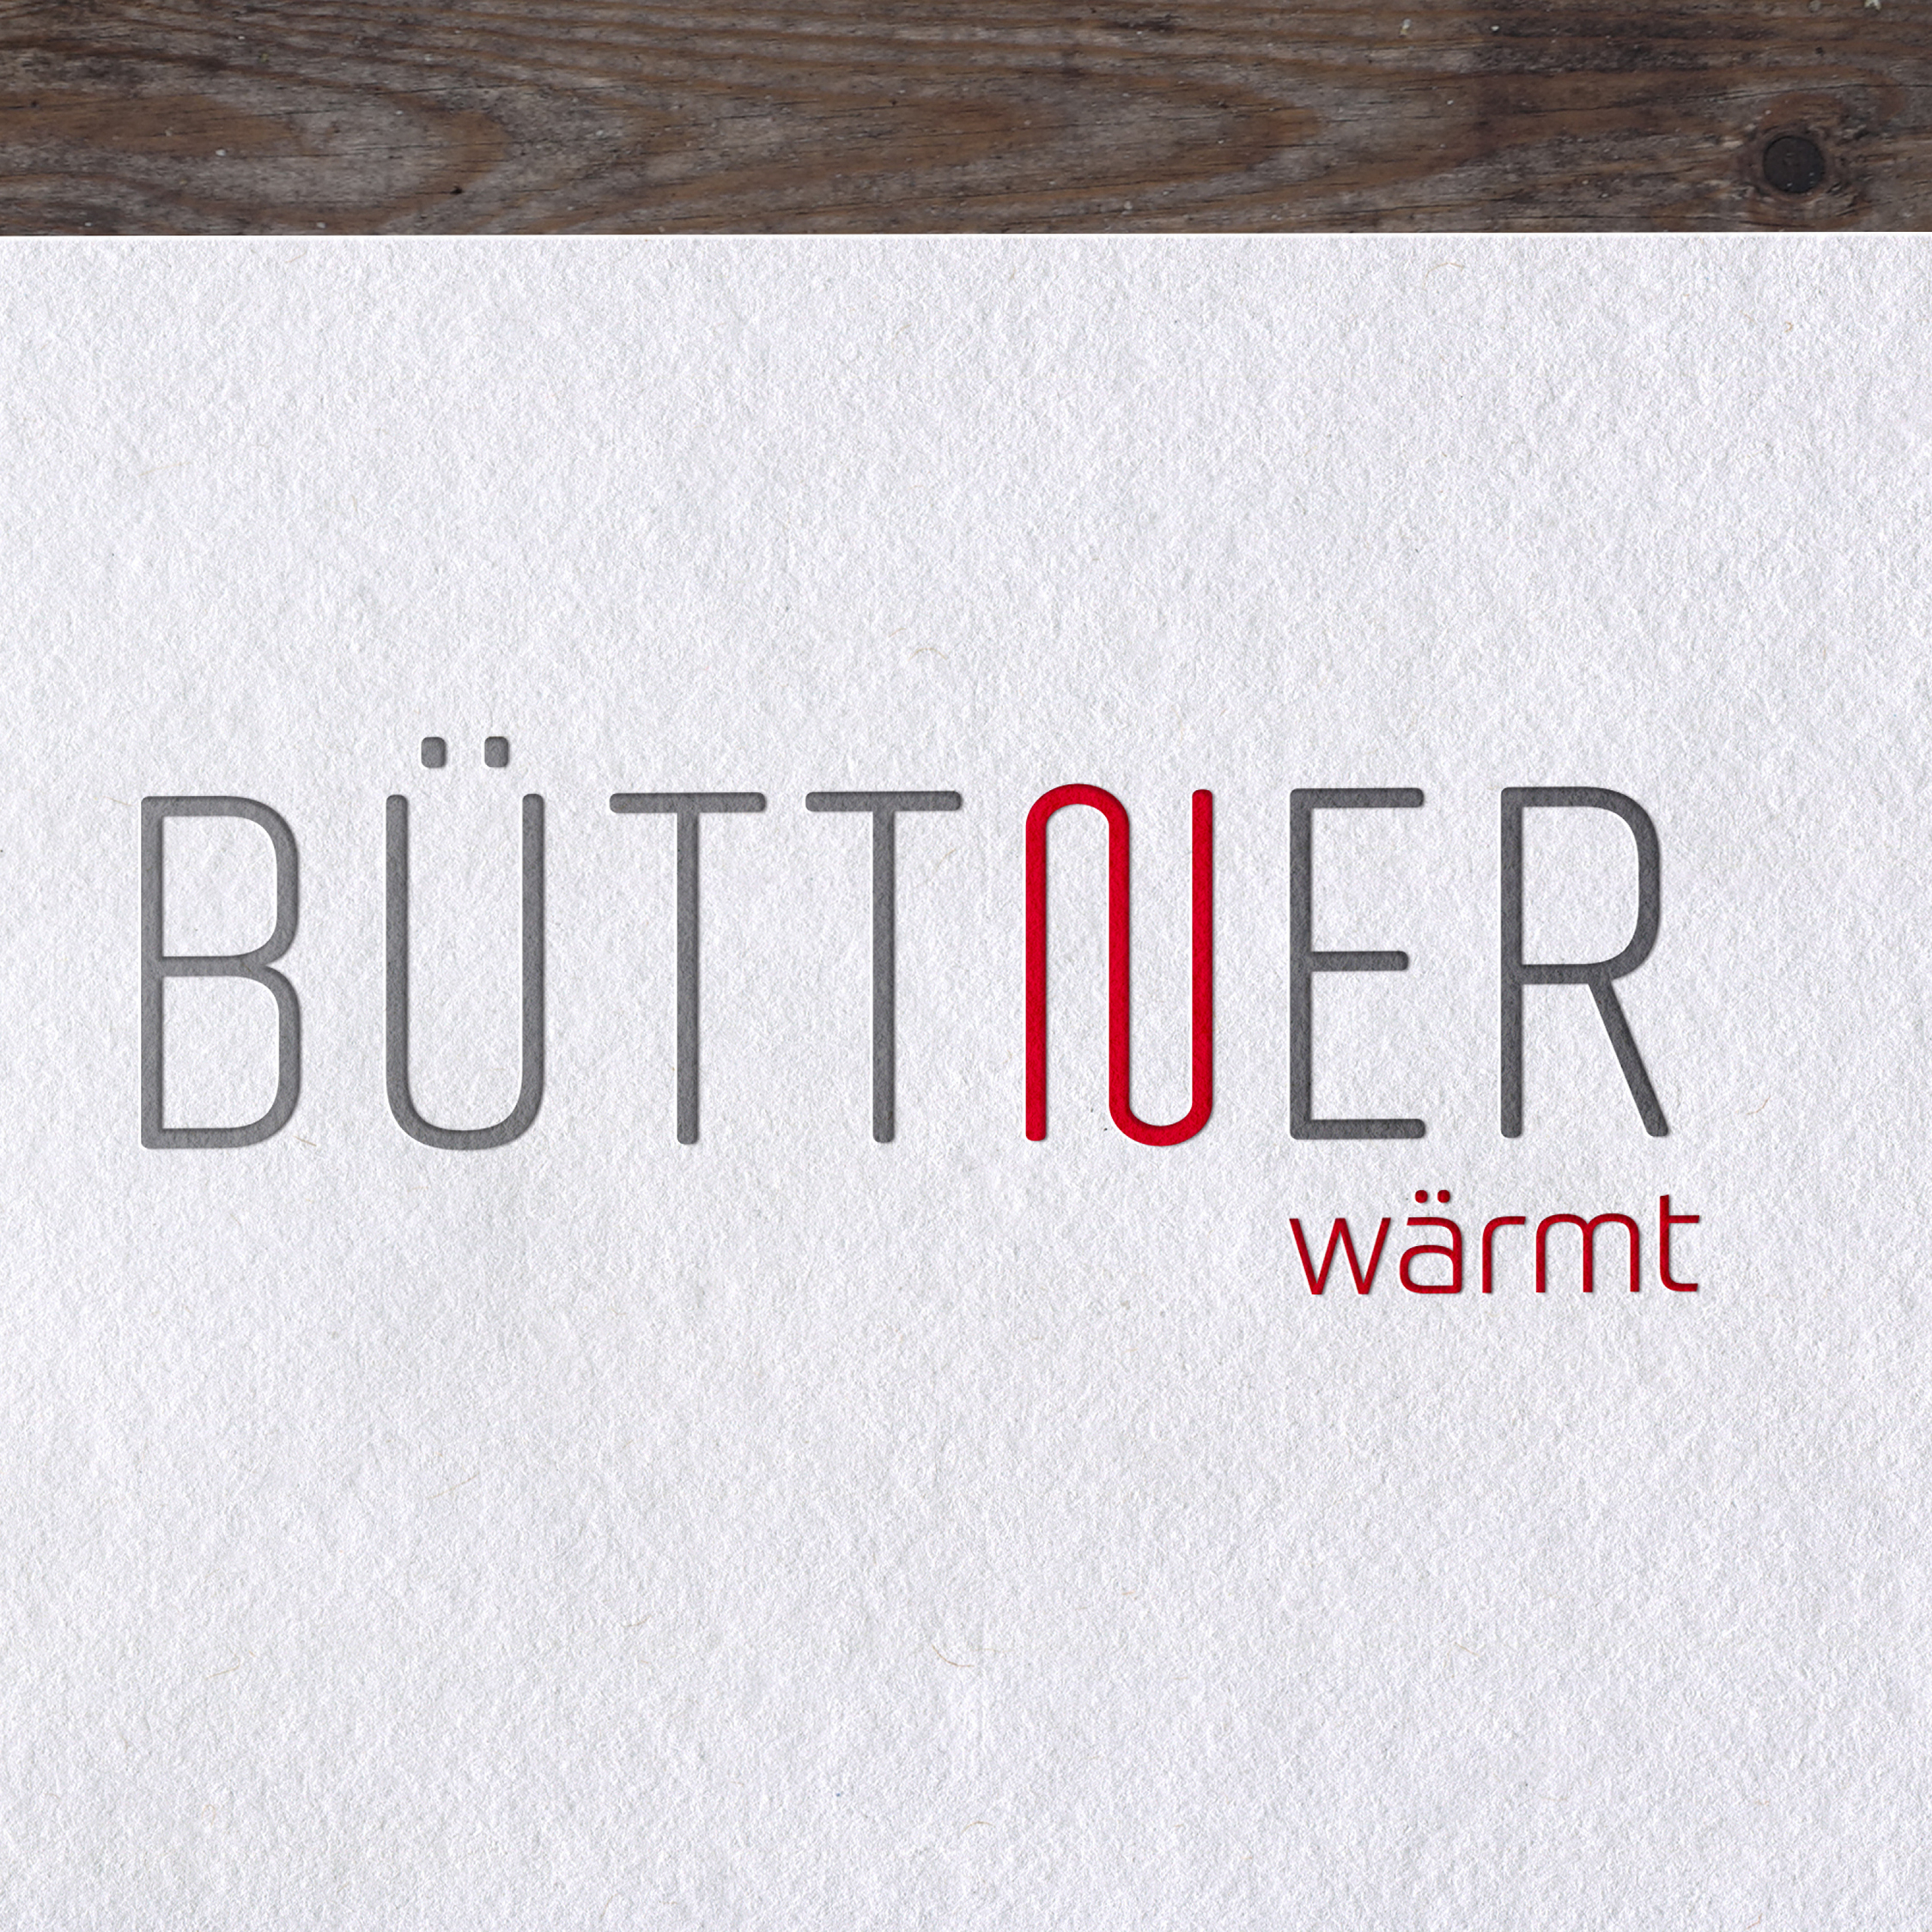 Buettner Logo Design